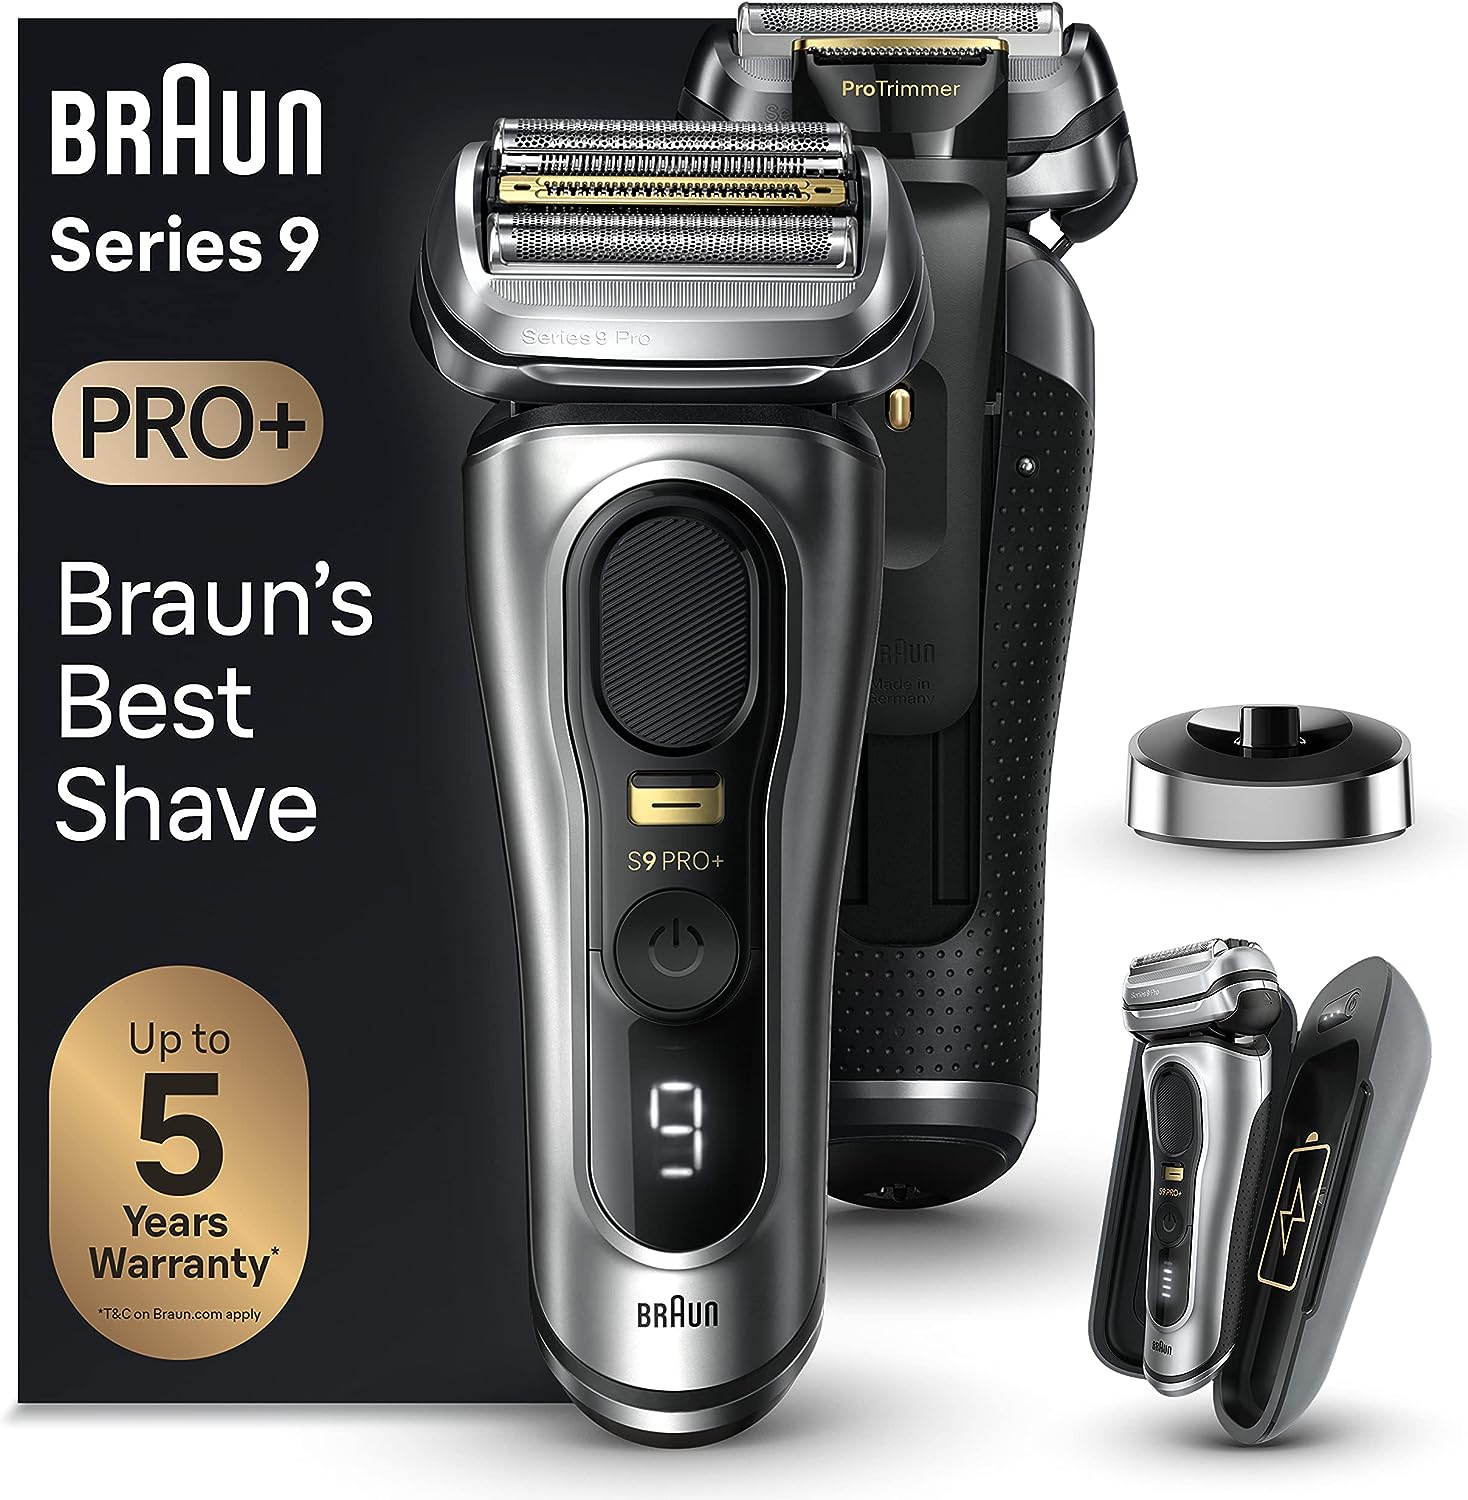 Braun Série 9 Pro Plus vs Braun Série 9 vs Braun Série 9 Pro